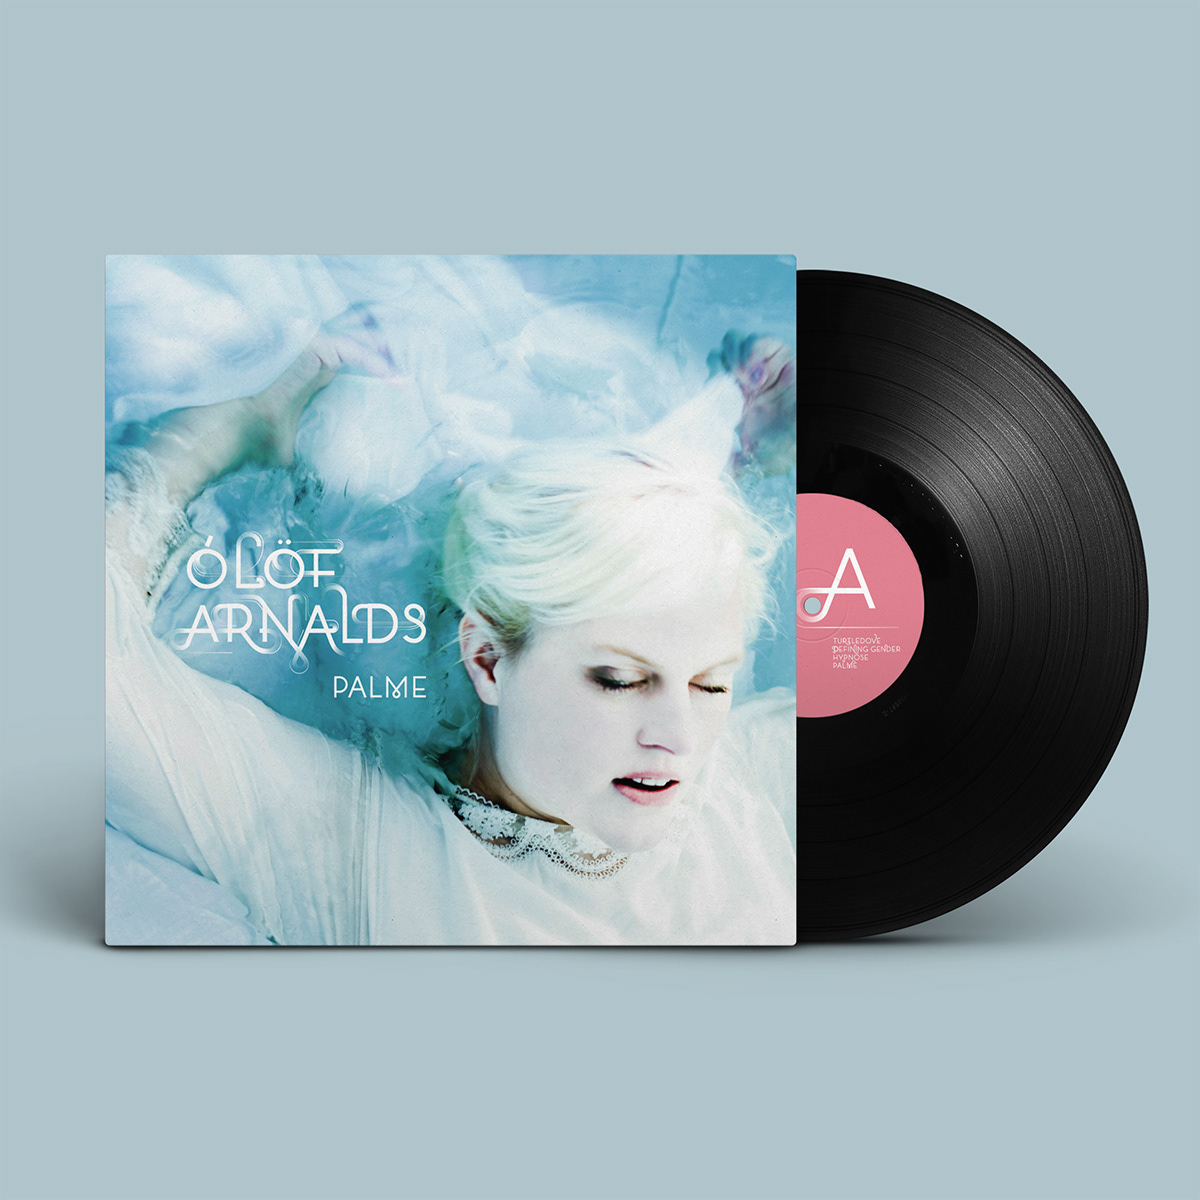 Olof Arnalds album cover album art